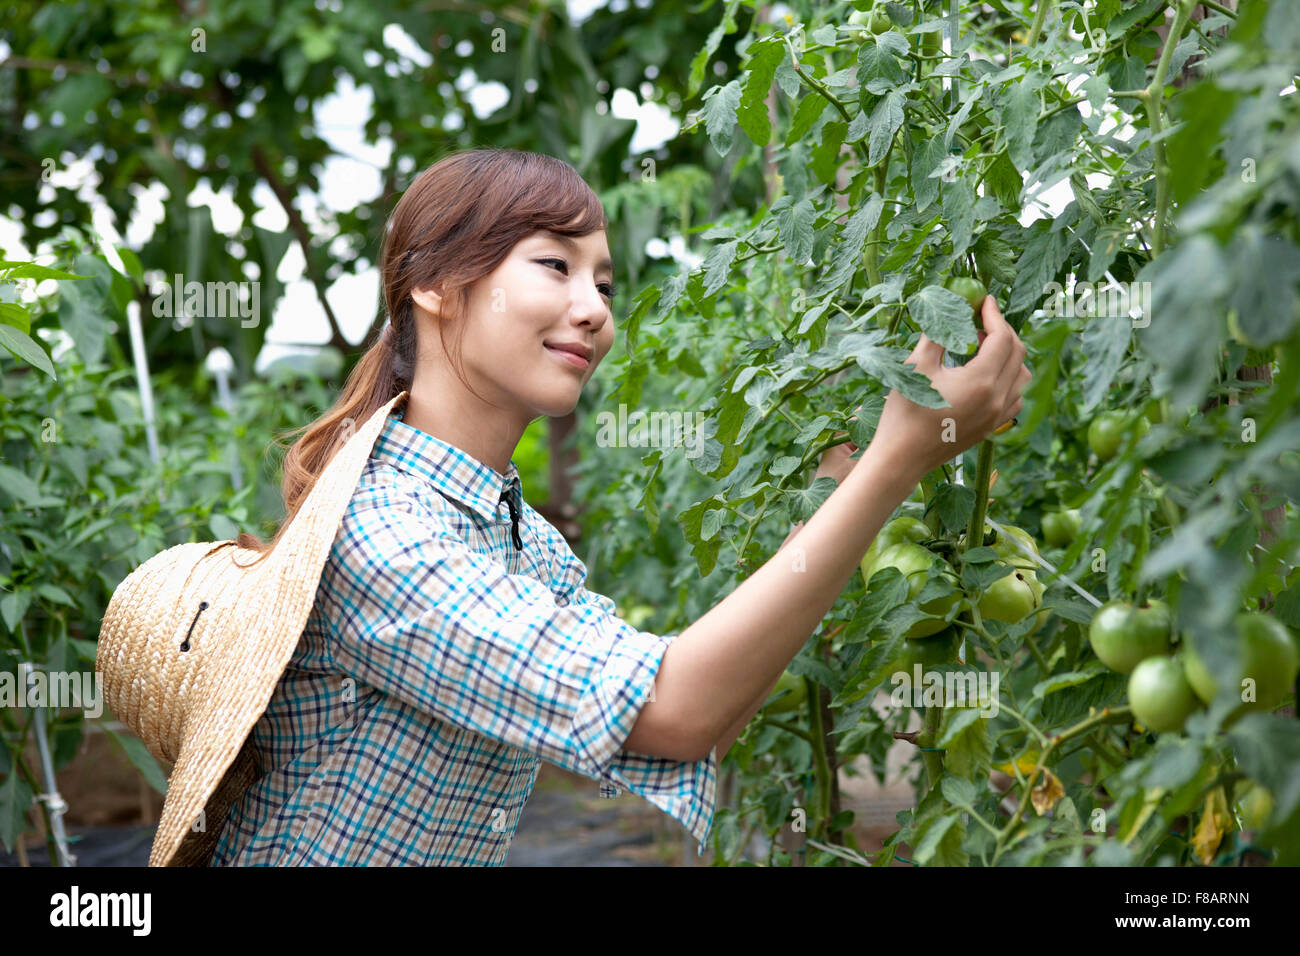 Vista lateral retrato de mujer observando el tomate verde con una sonrisa Foto de stock